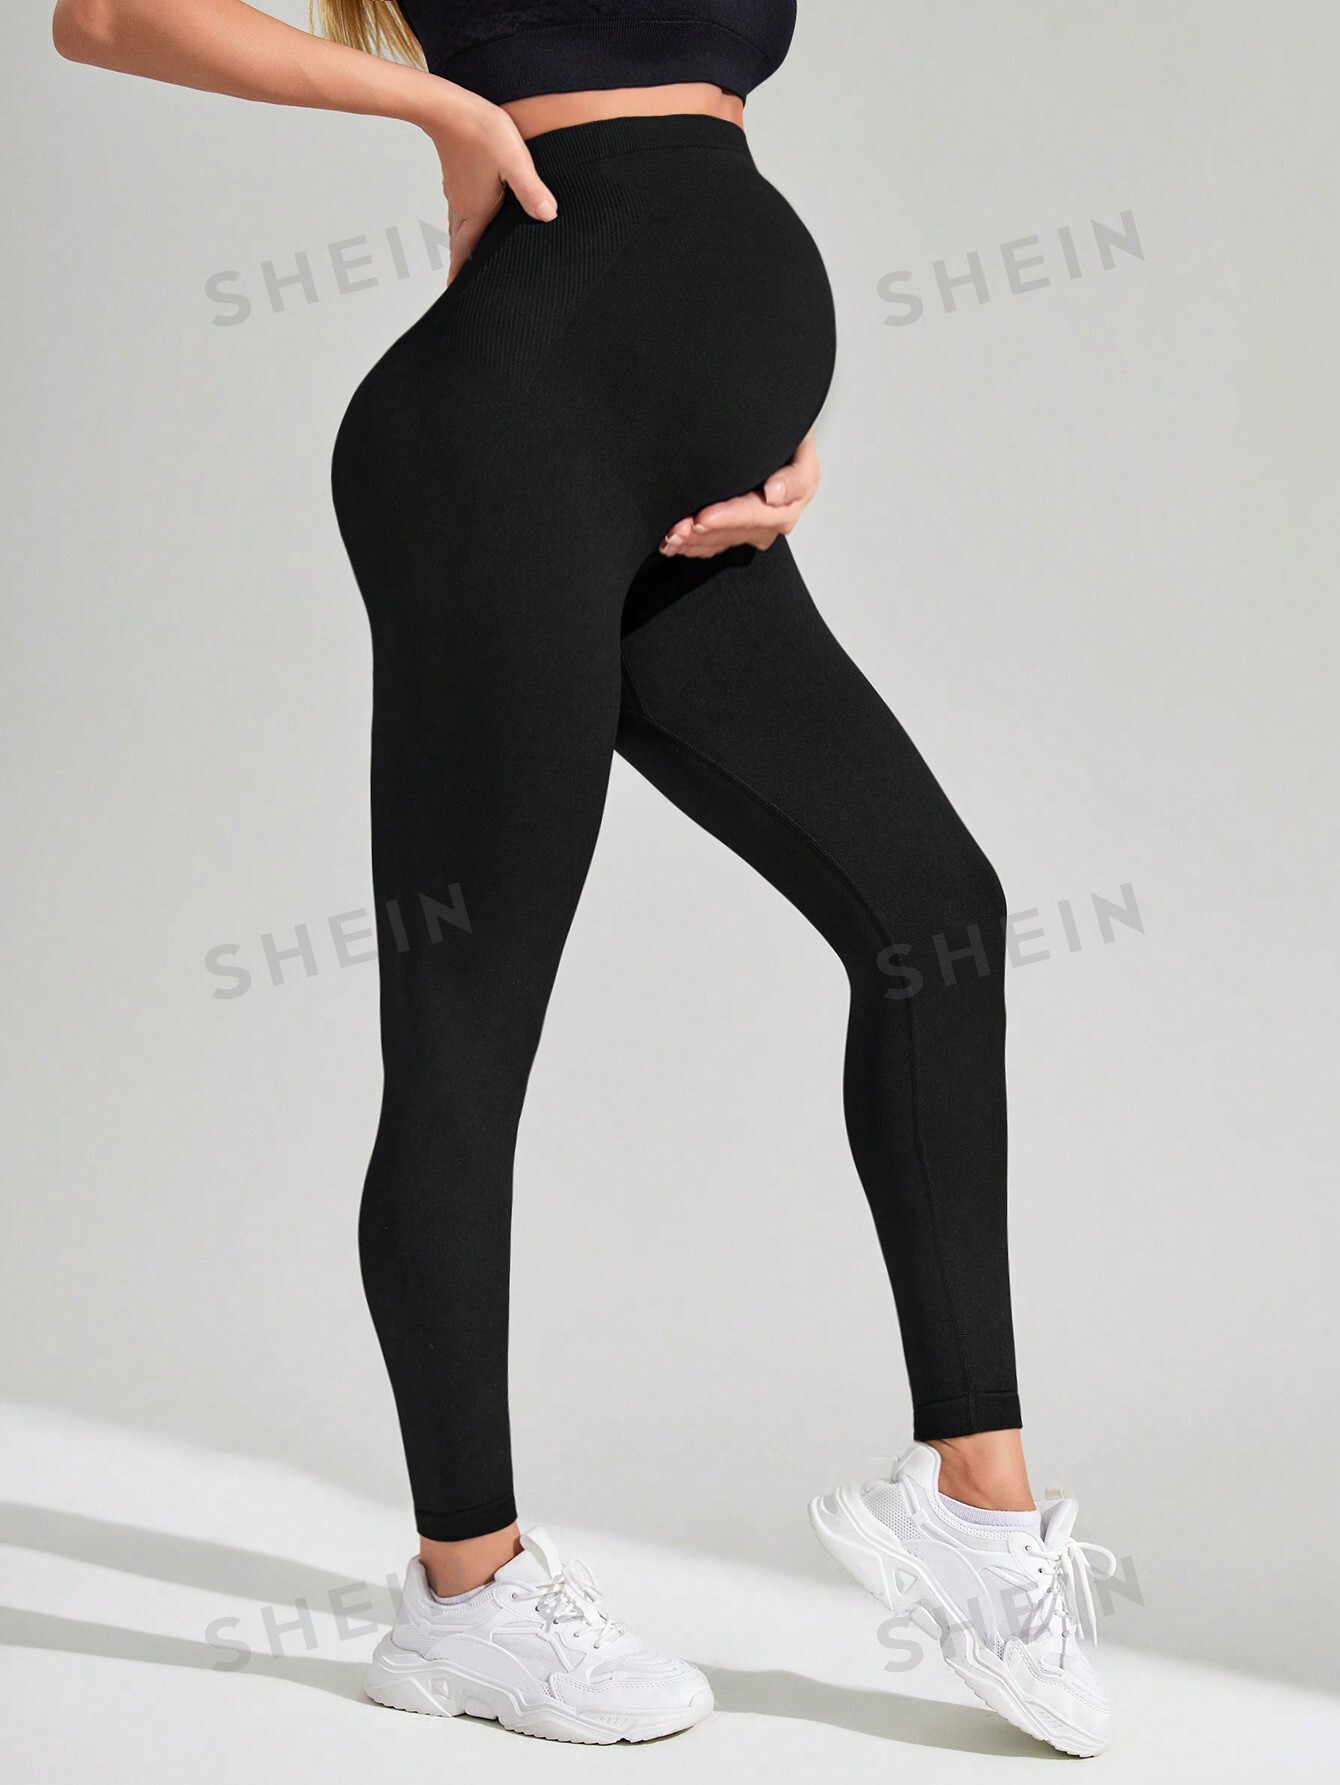 Бесшовные спортивные леггинсы для йоги SHEIN для беременных, черный розовые бесшовные леггинсы для йоги vuпелье женские спортивные брюки с завышенной талией бесшовные леггинсы для йоги спортивные штаны для